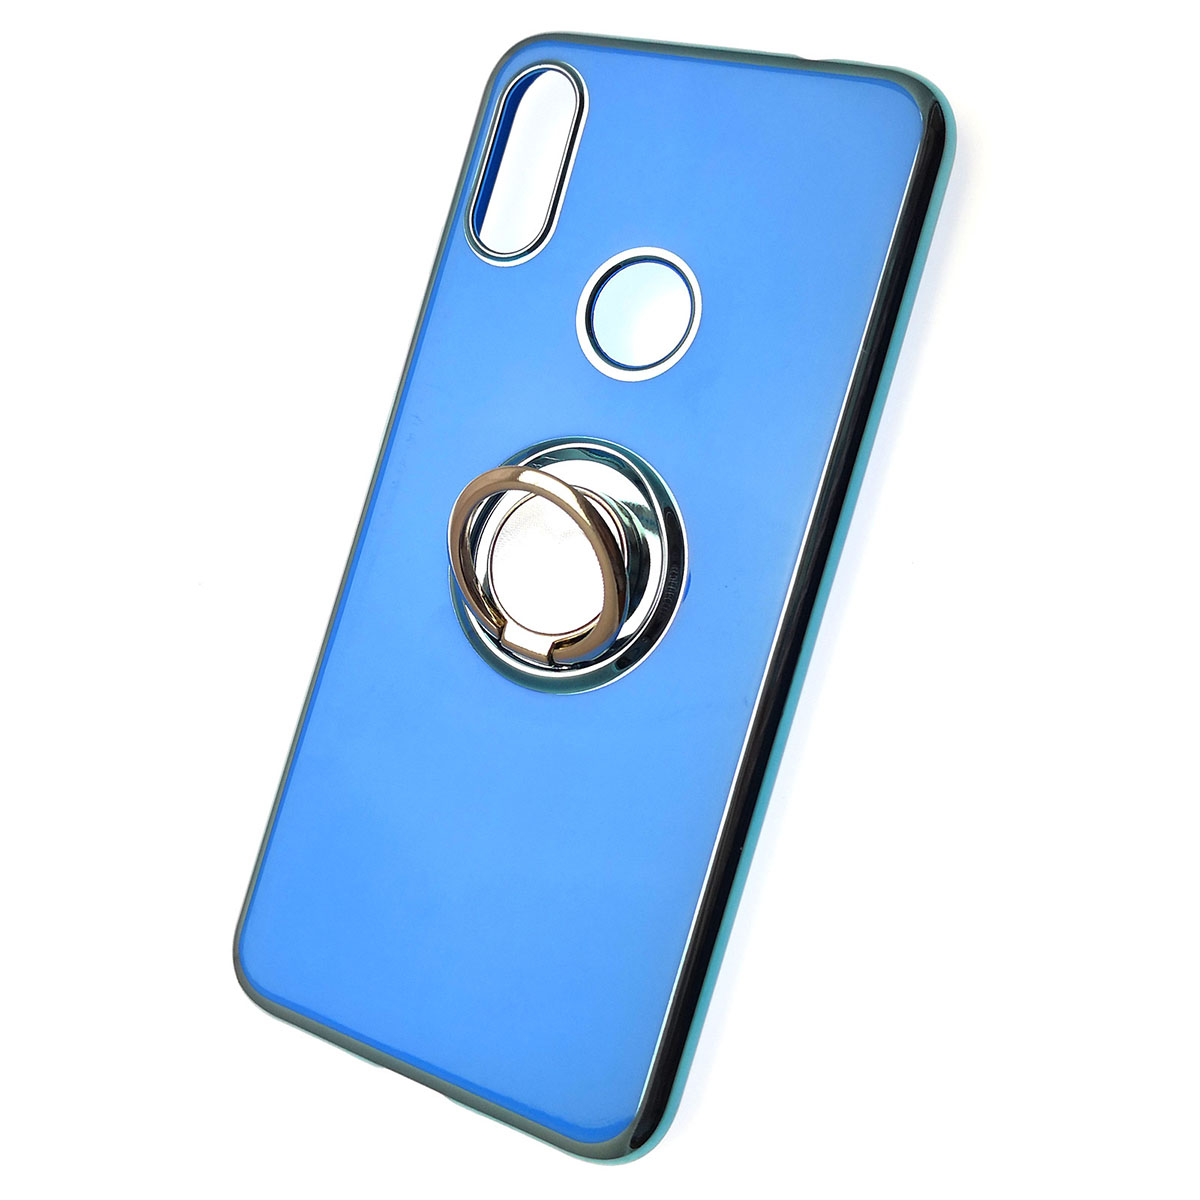 Чехол накладка для XIAOMI Redmi Note 7, Note 7 Pro, силикон, кольцо держатель, цвет синий.